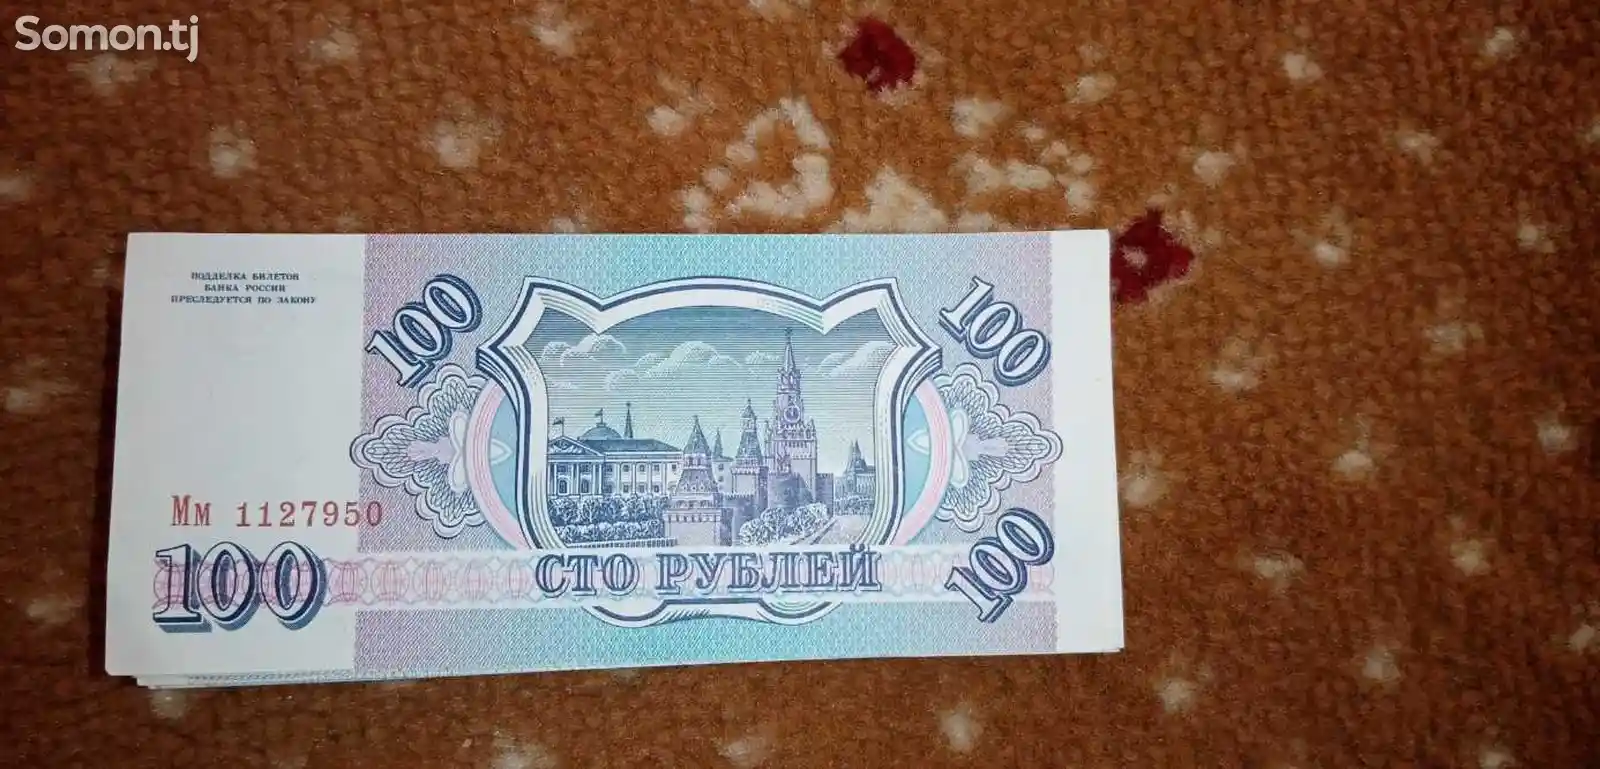 100 рубль купюра СССР-2